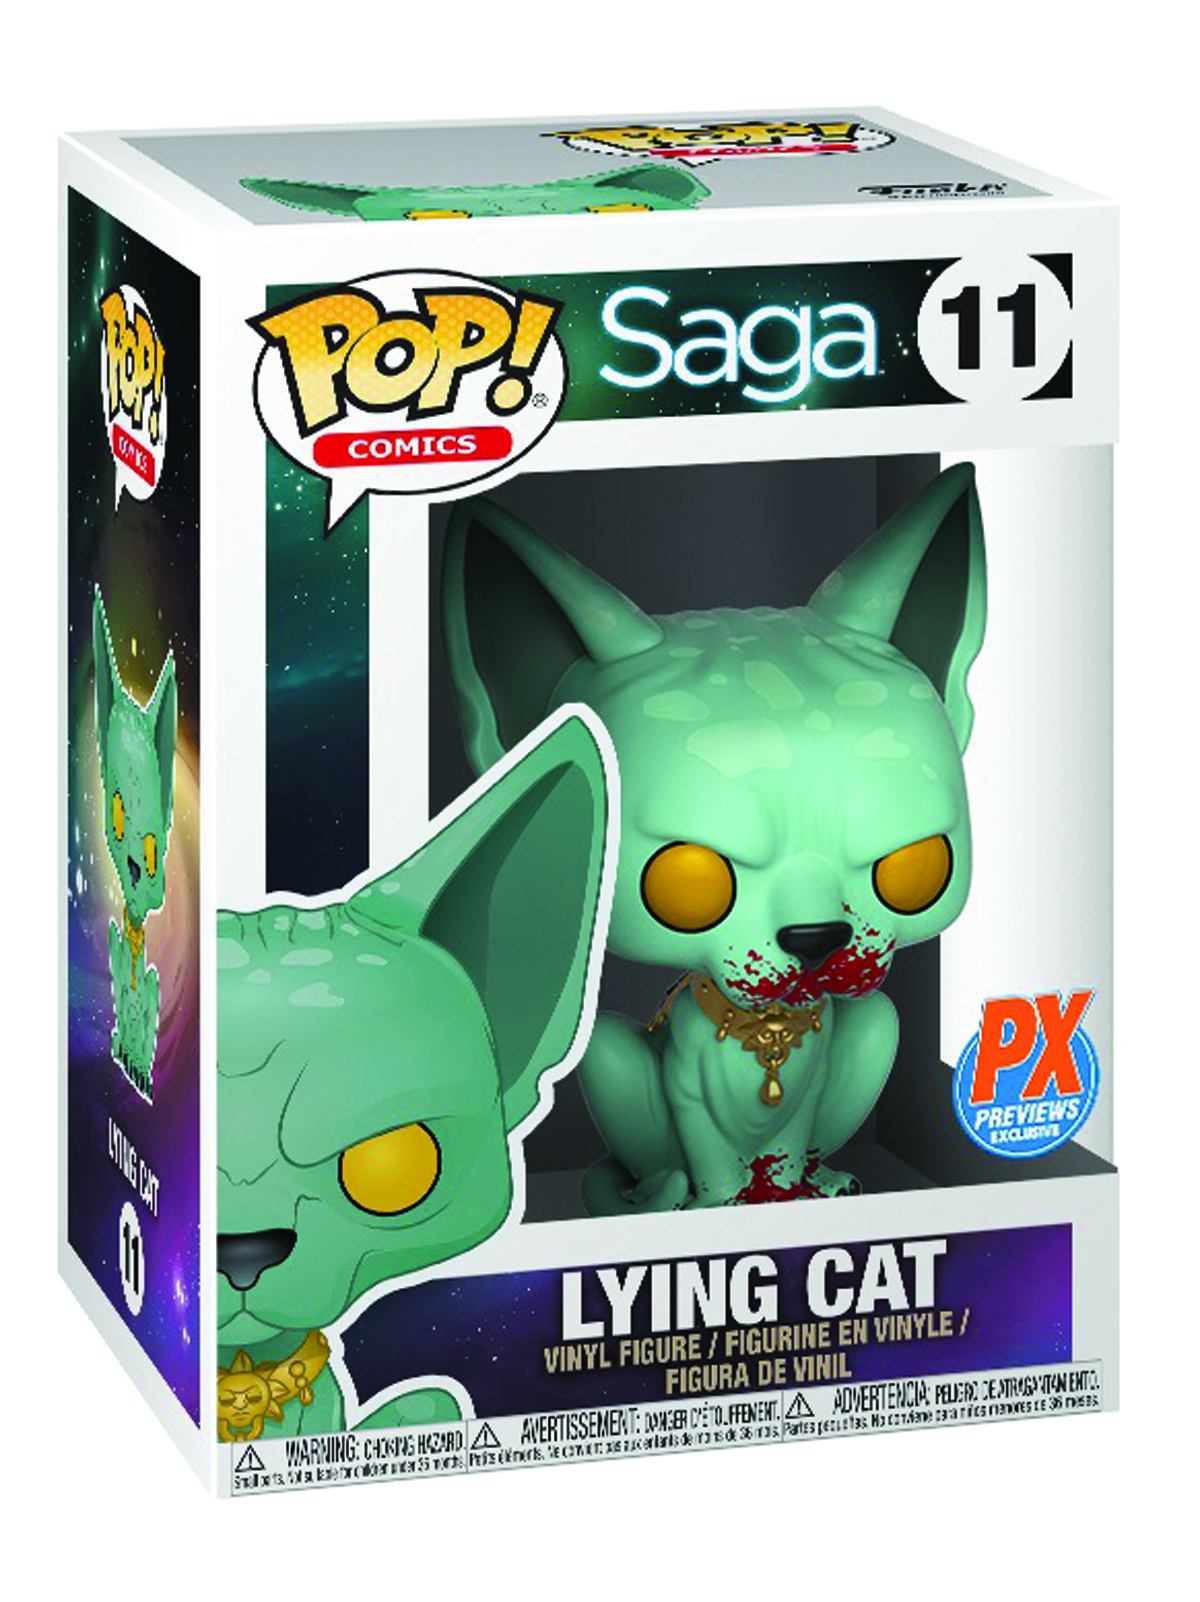 POP Comics 11 Saga Lying Cat Px FCBD Exclusive vinyl figure